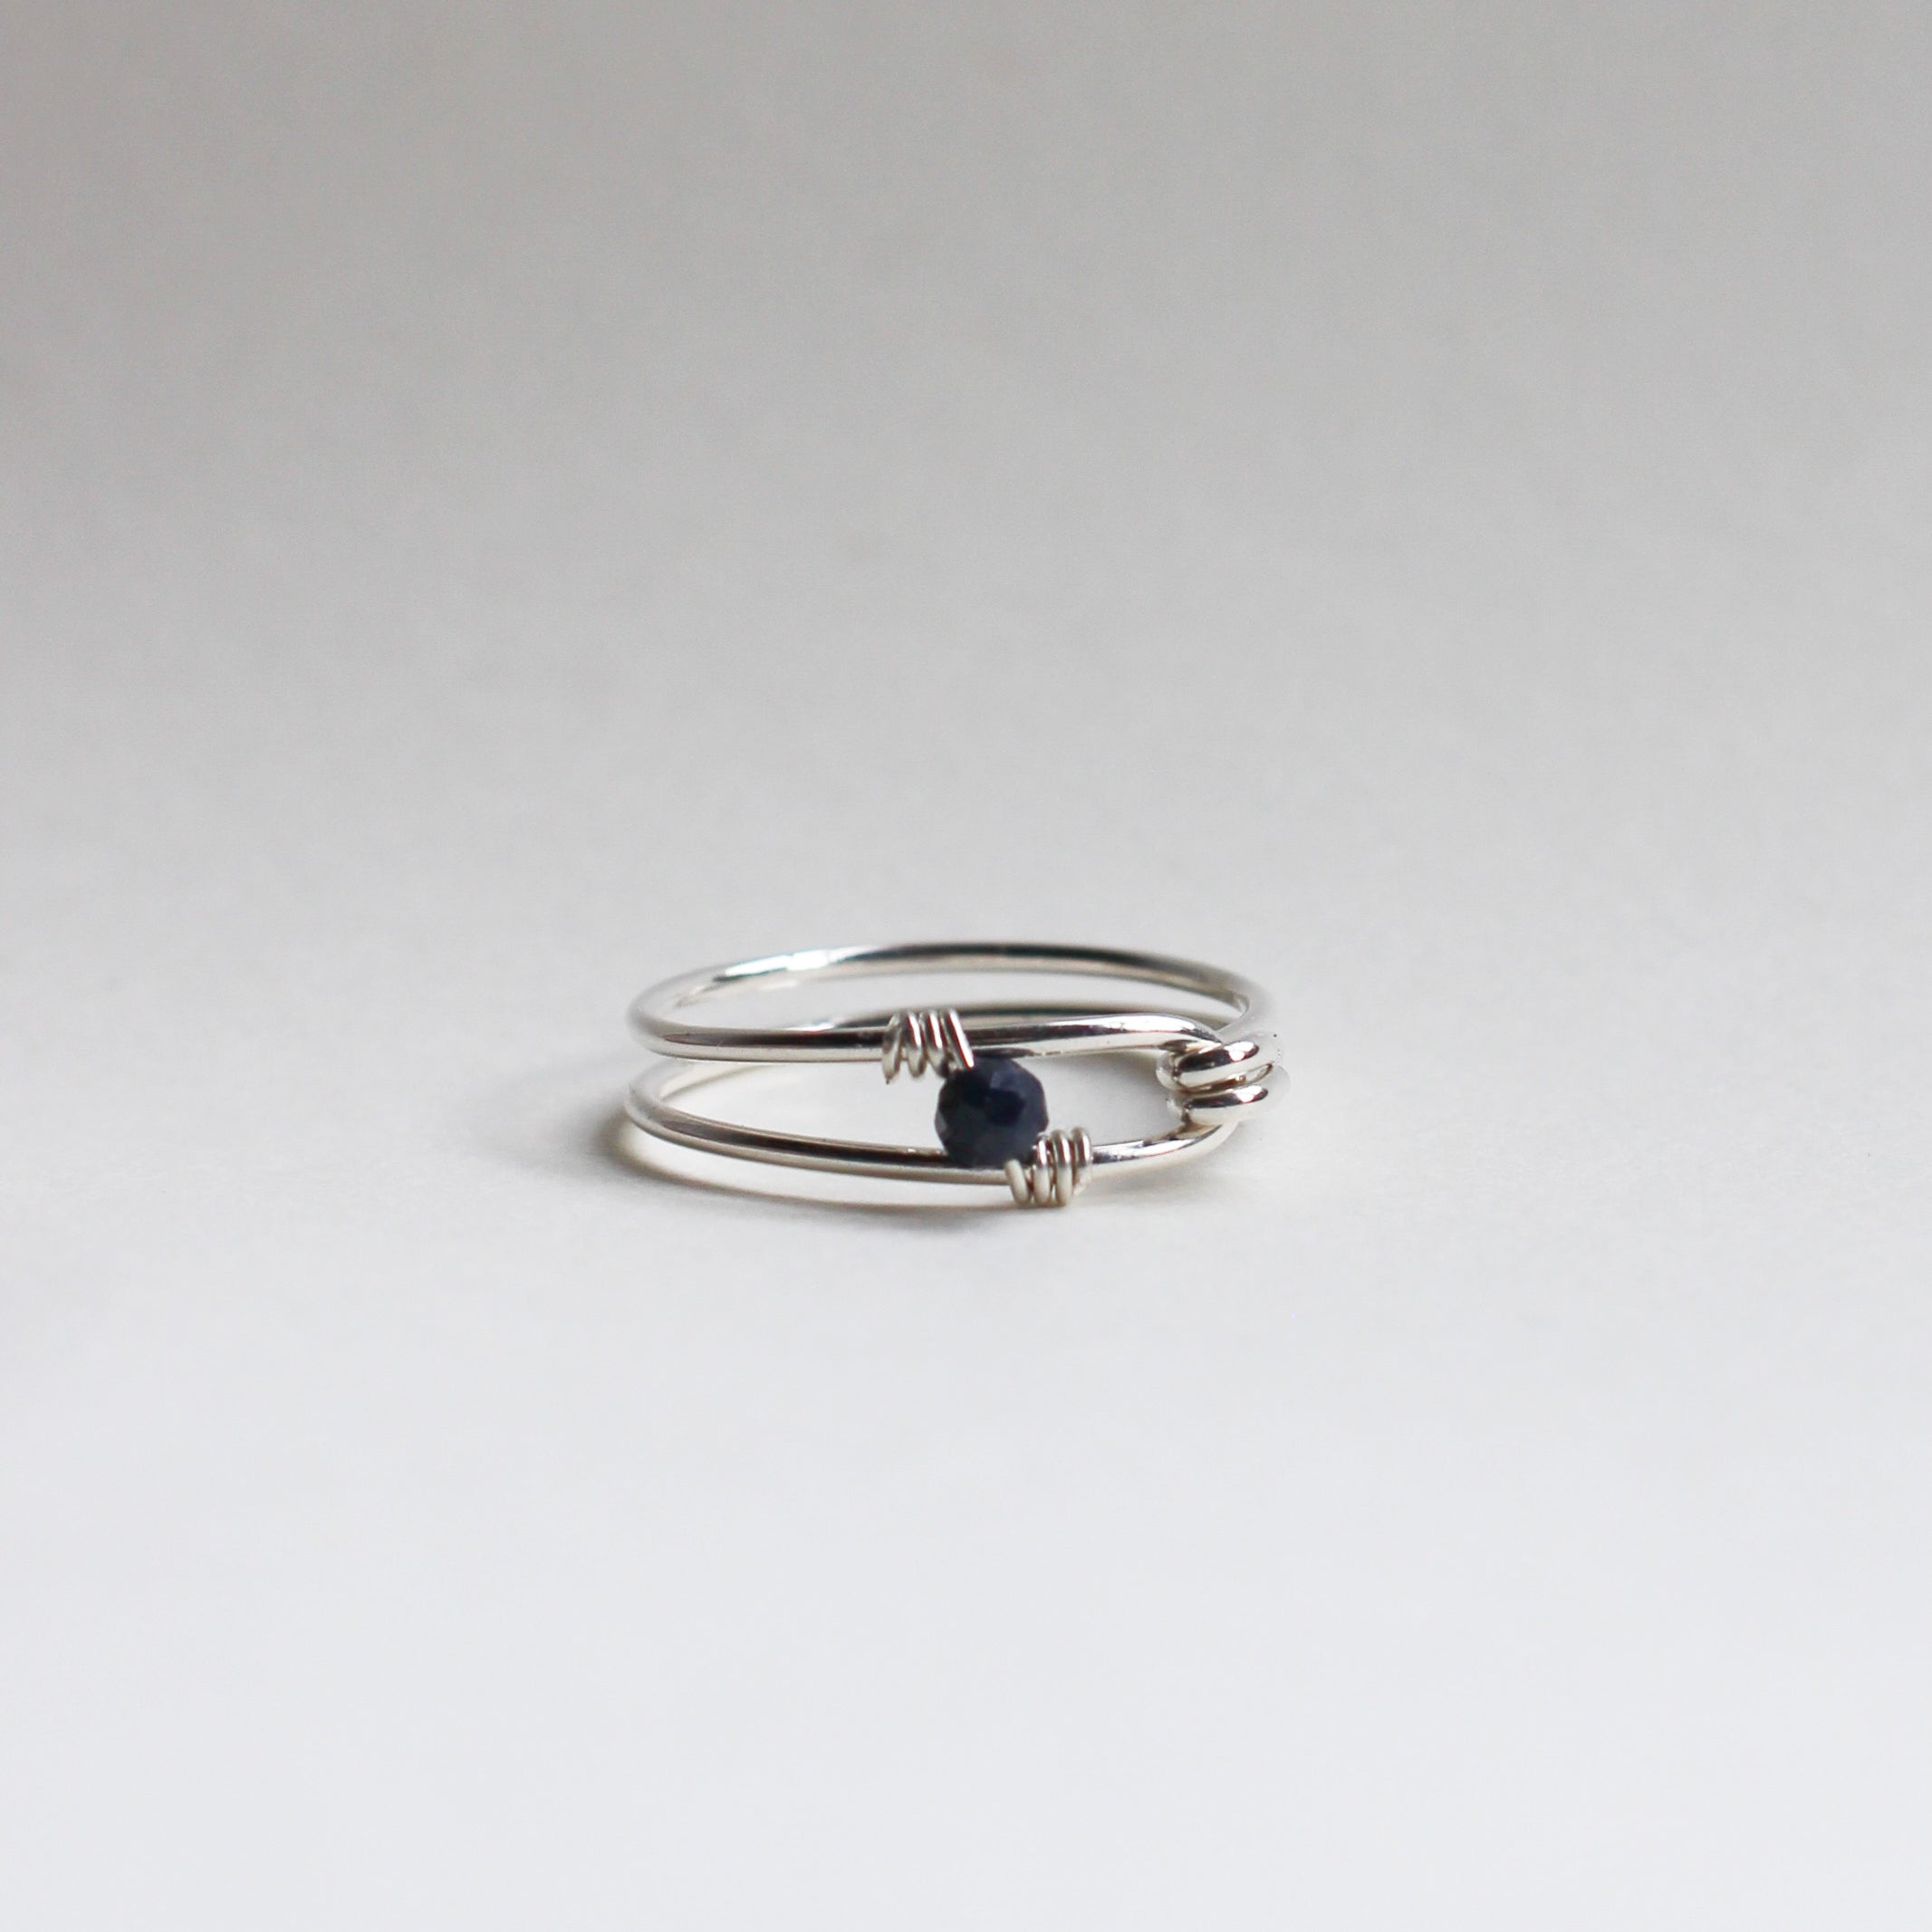 Birthstone Ring in Sterling Silver